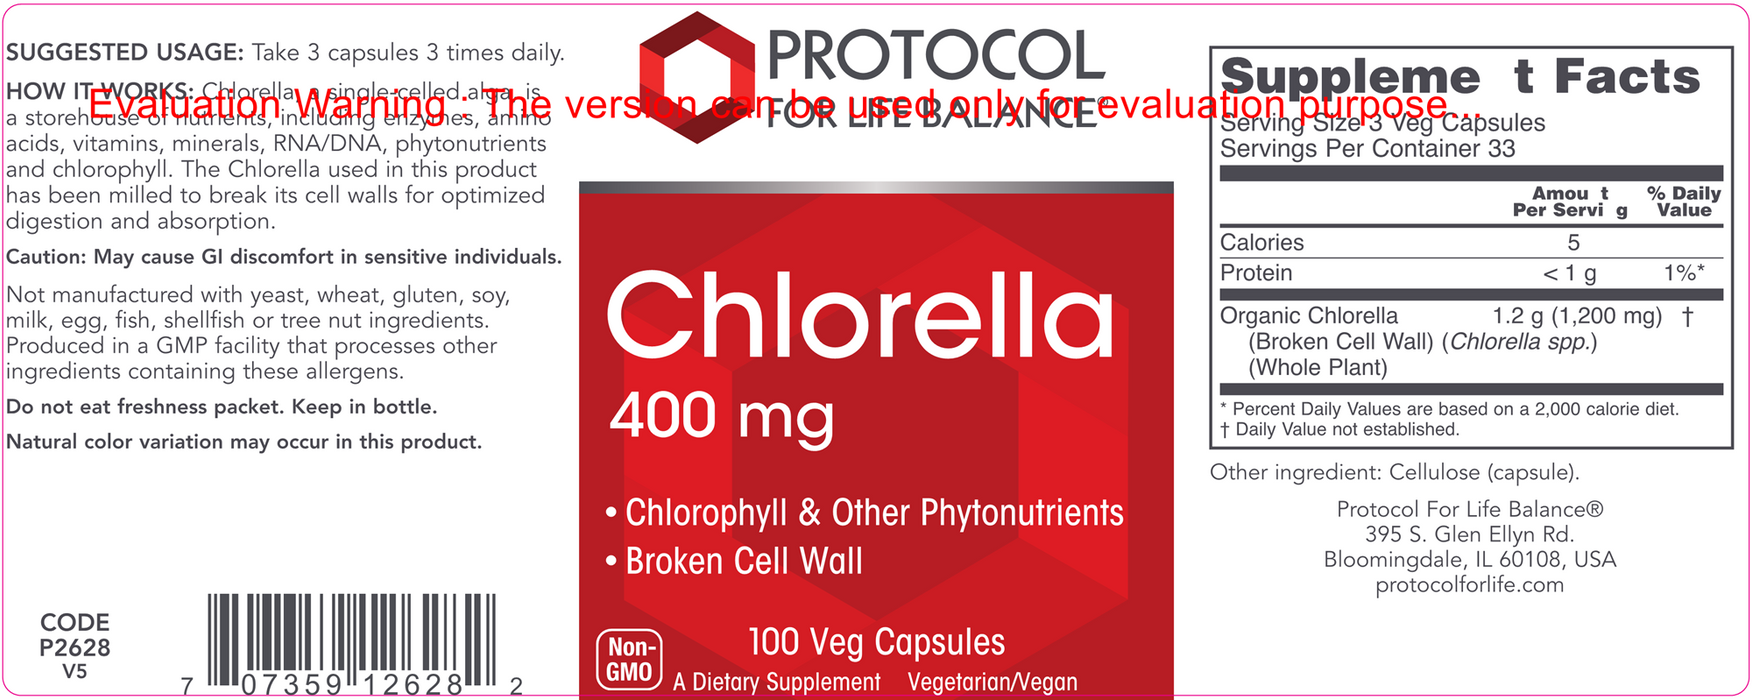 Protocol For Life Balance Chlorella 400 mg 100 vcaps